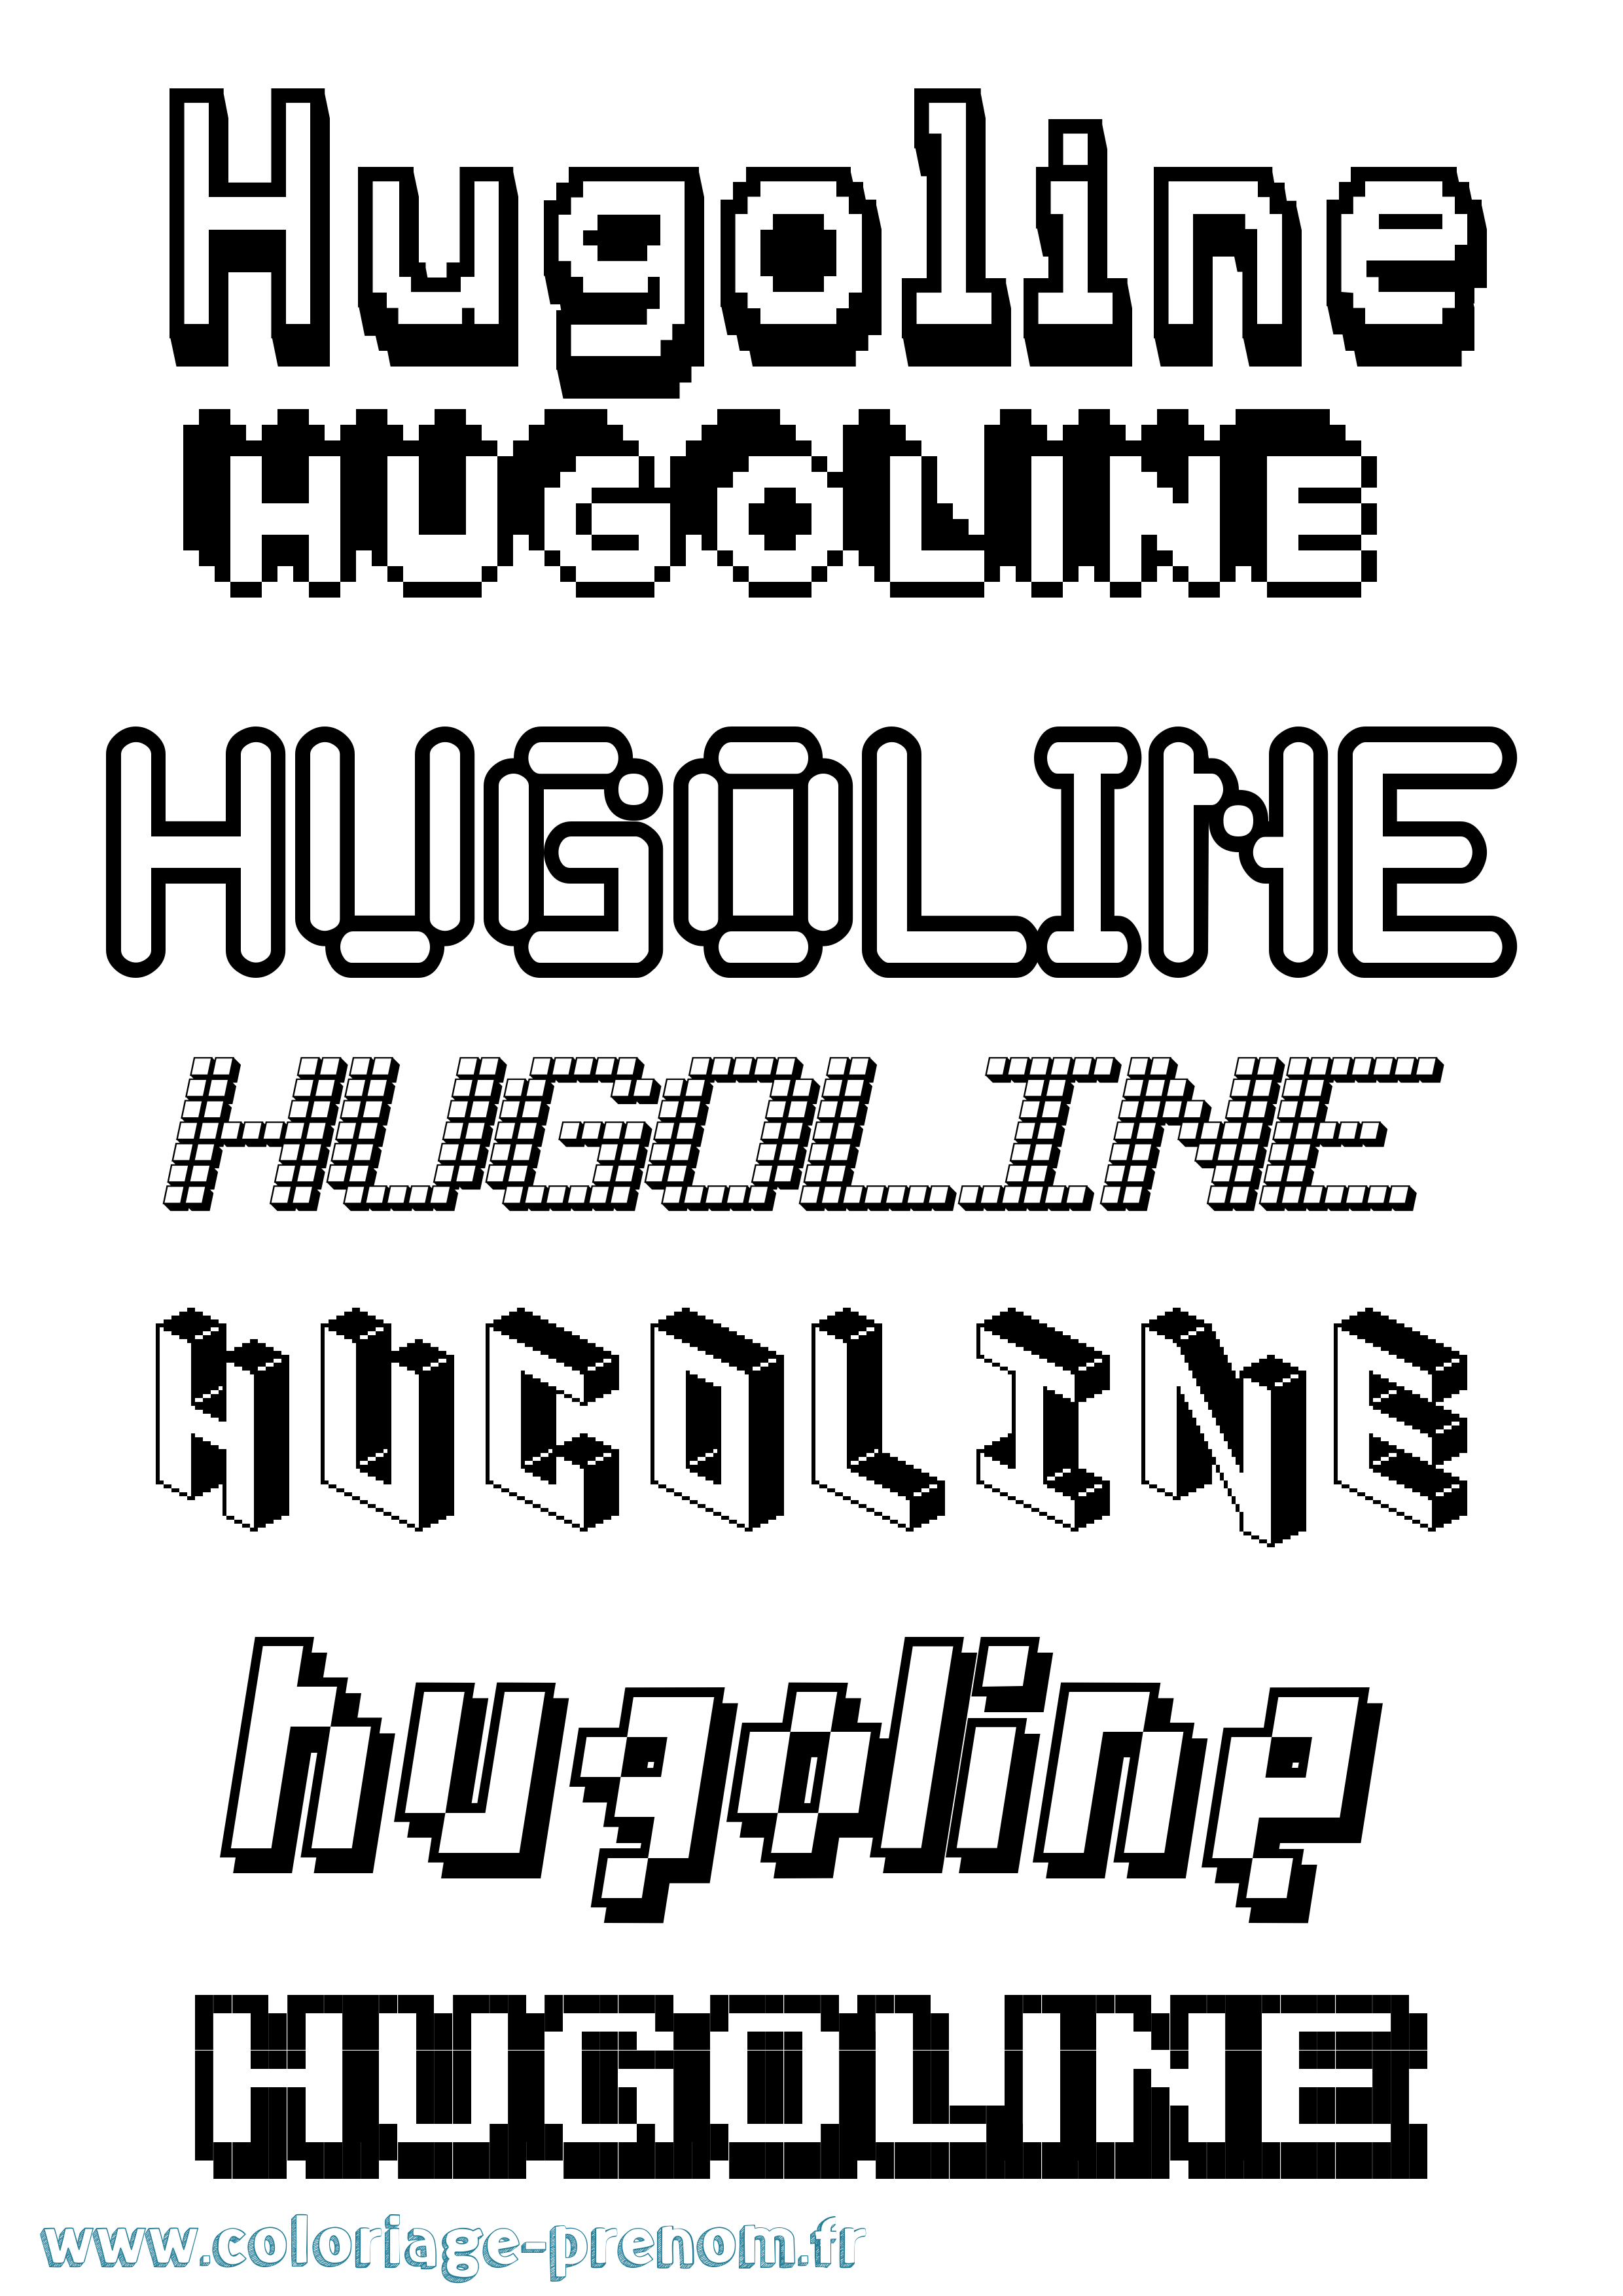 Coloriage prénom Hugoline Pixel